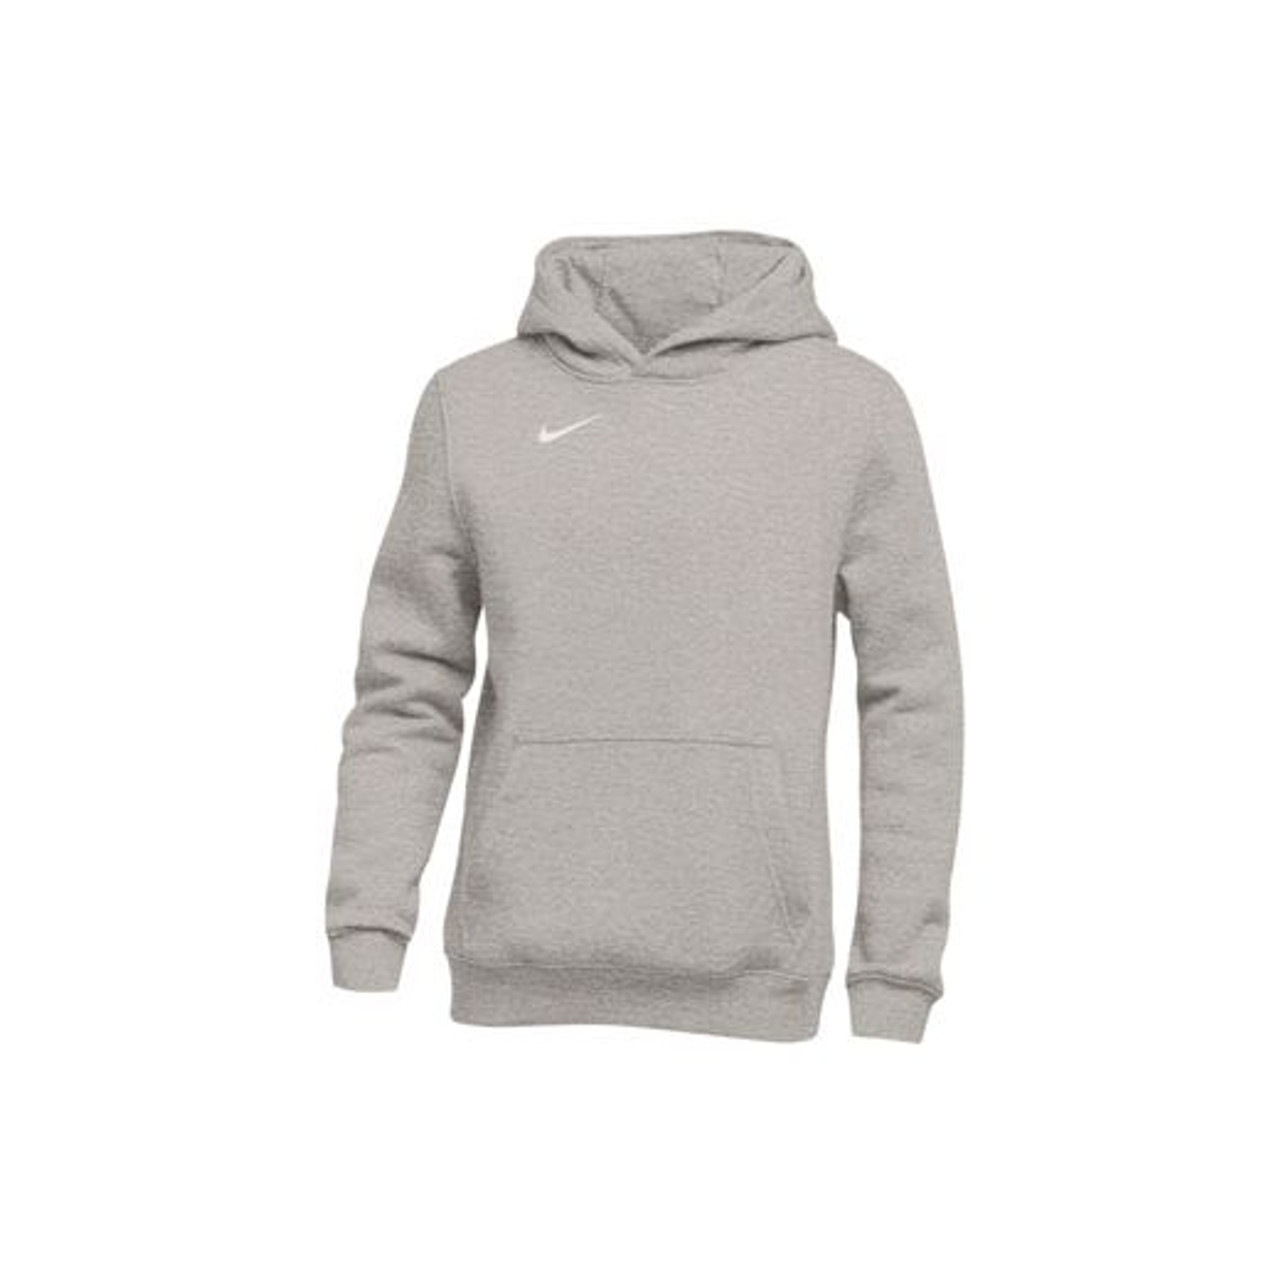 dark grey nike pullover hoodie